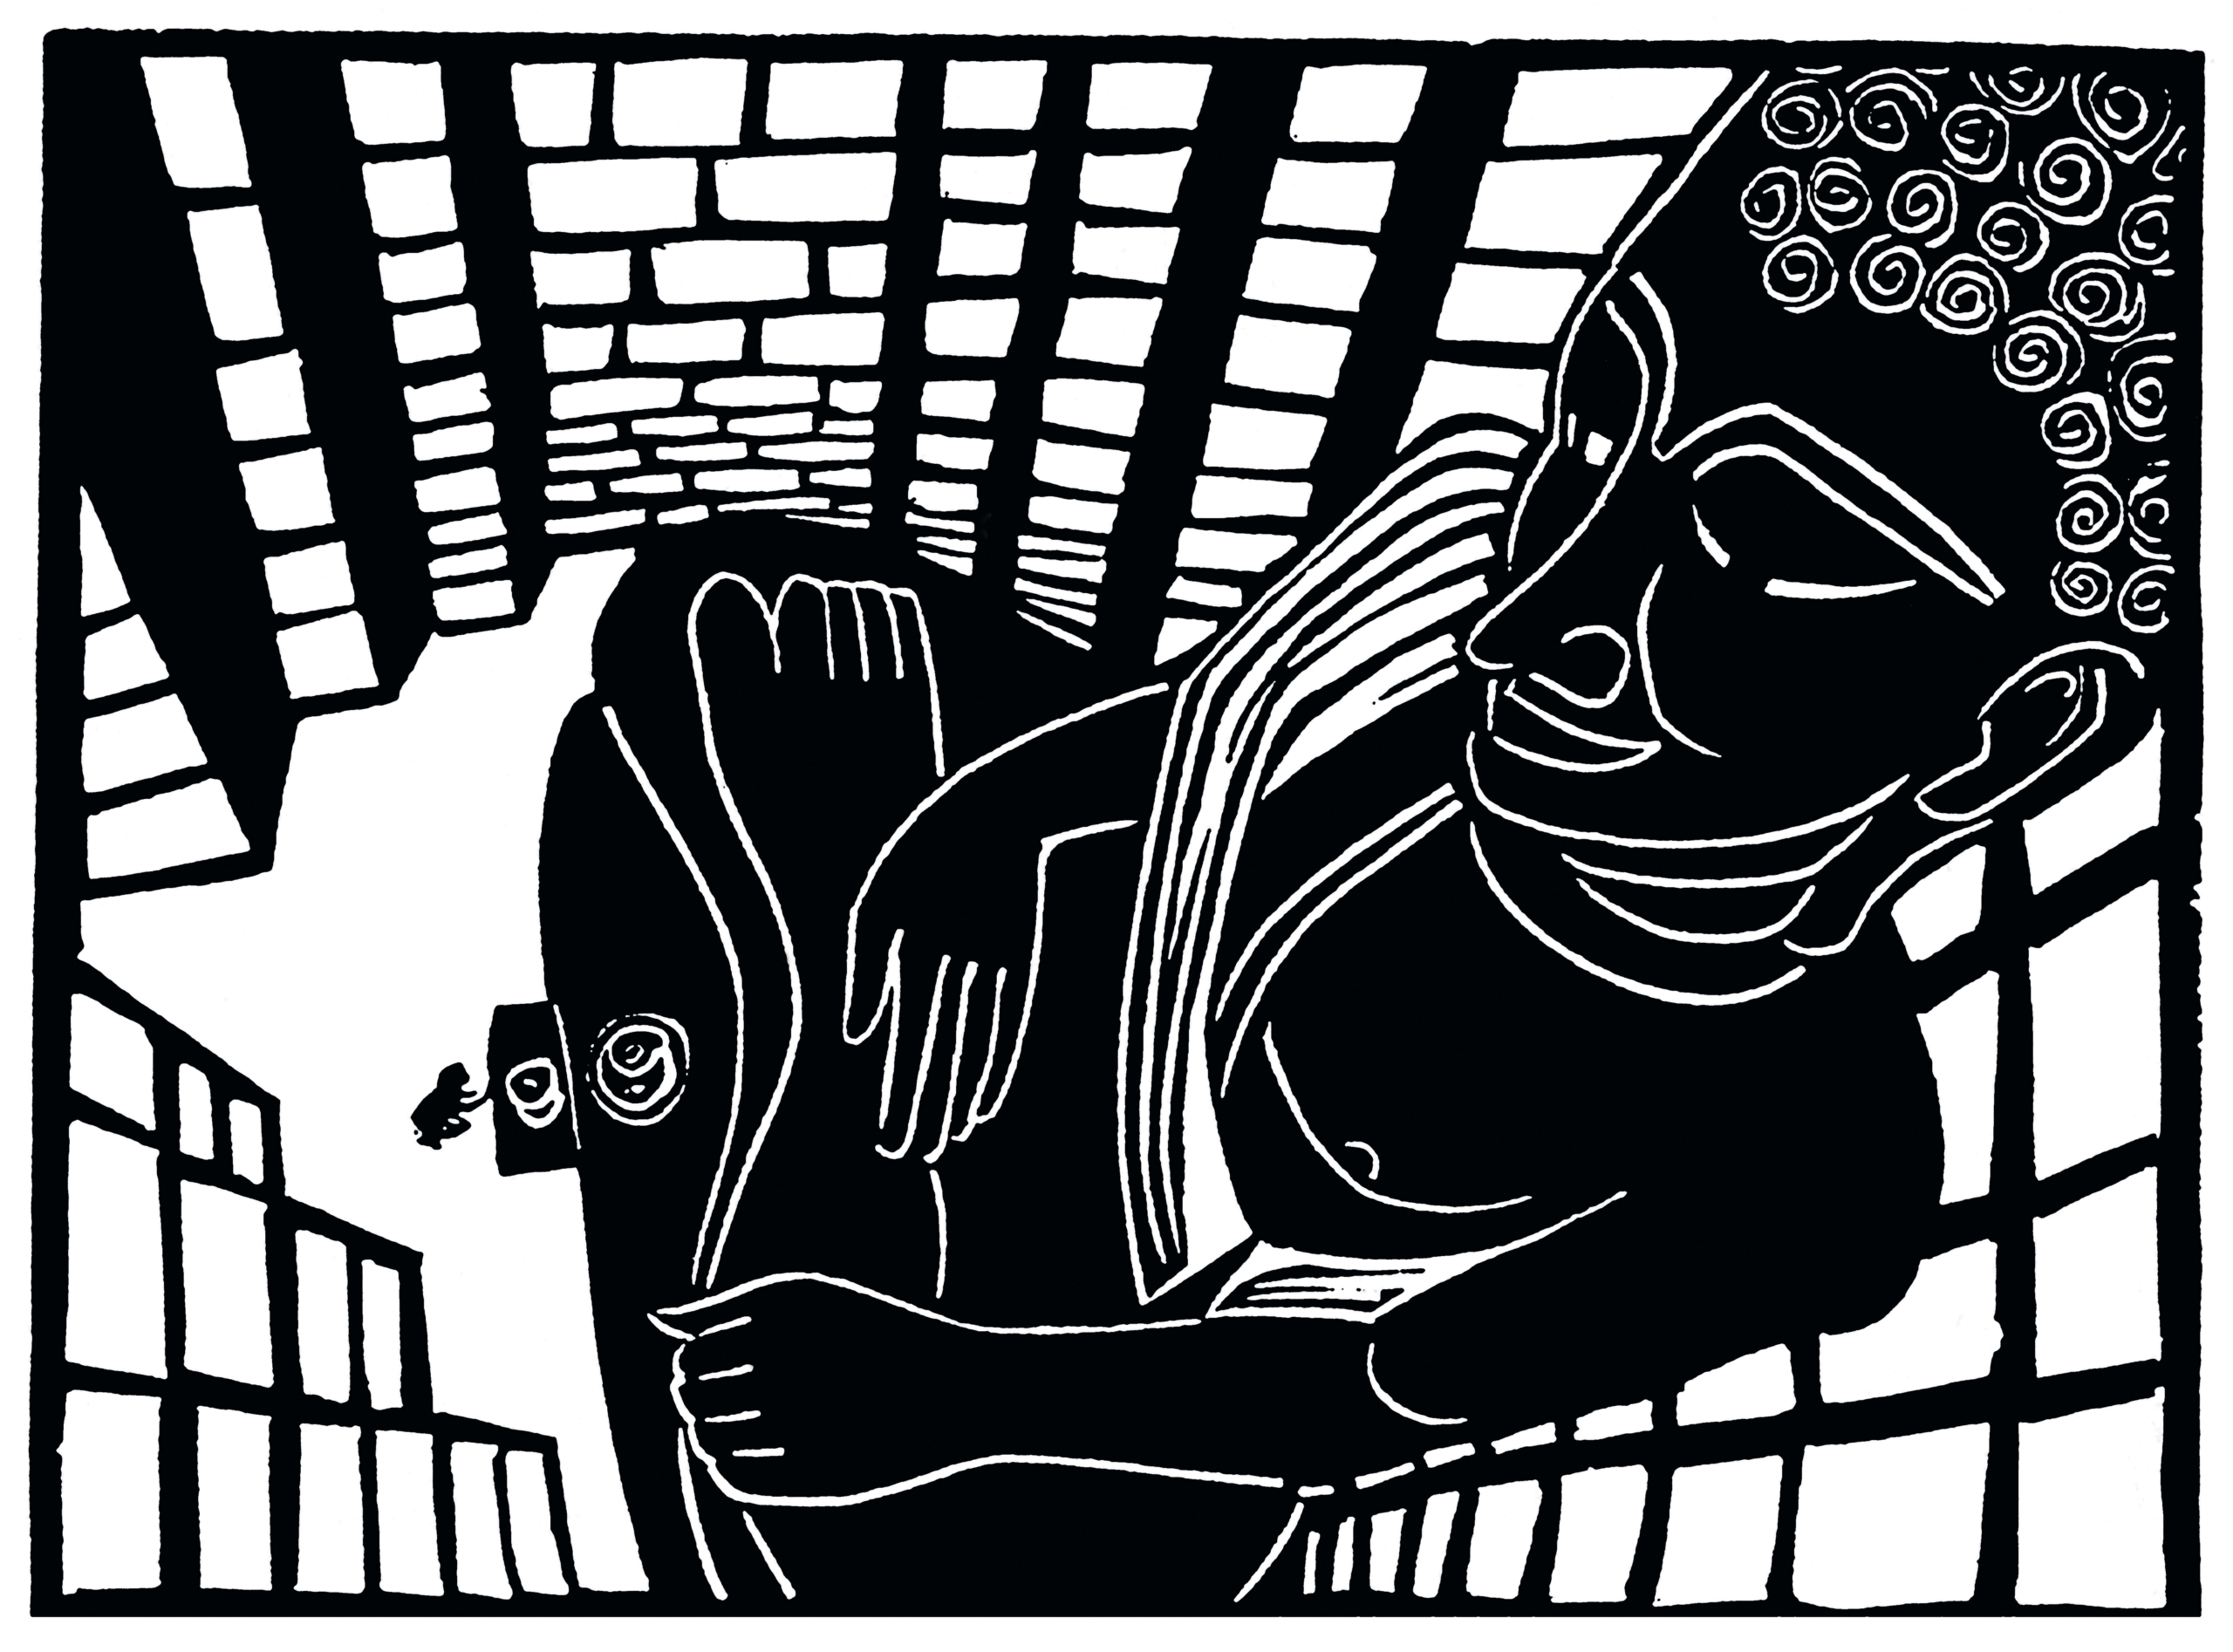 "Buddharahma" - Kunstdruck des Künstlers Michael Goepferd, hochwertiger Linoldruck